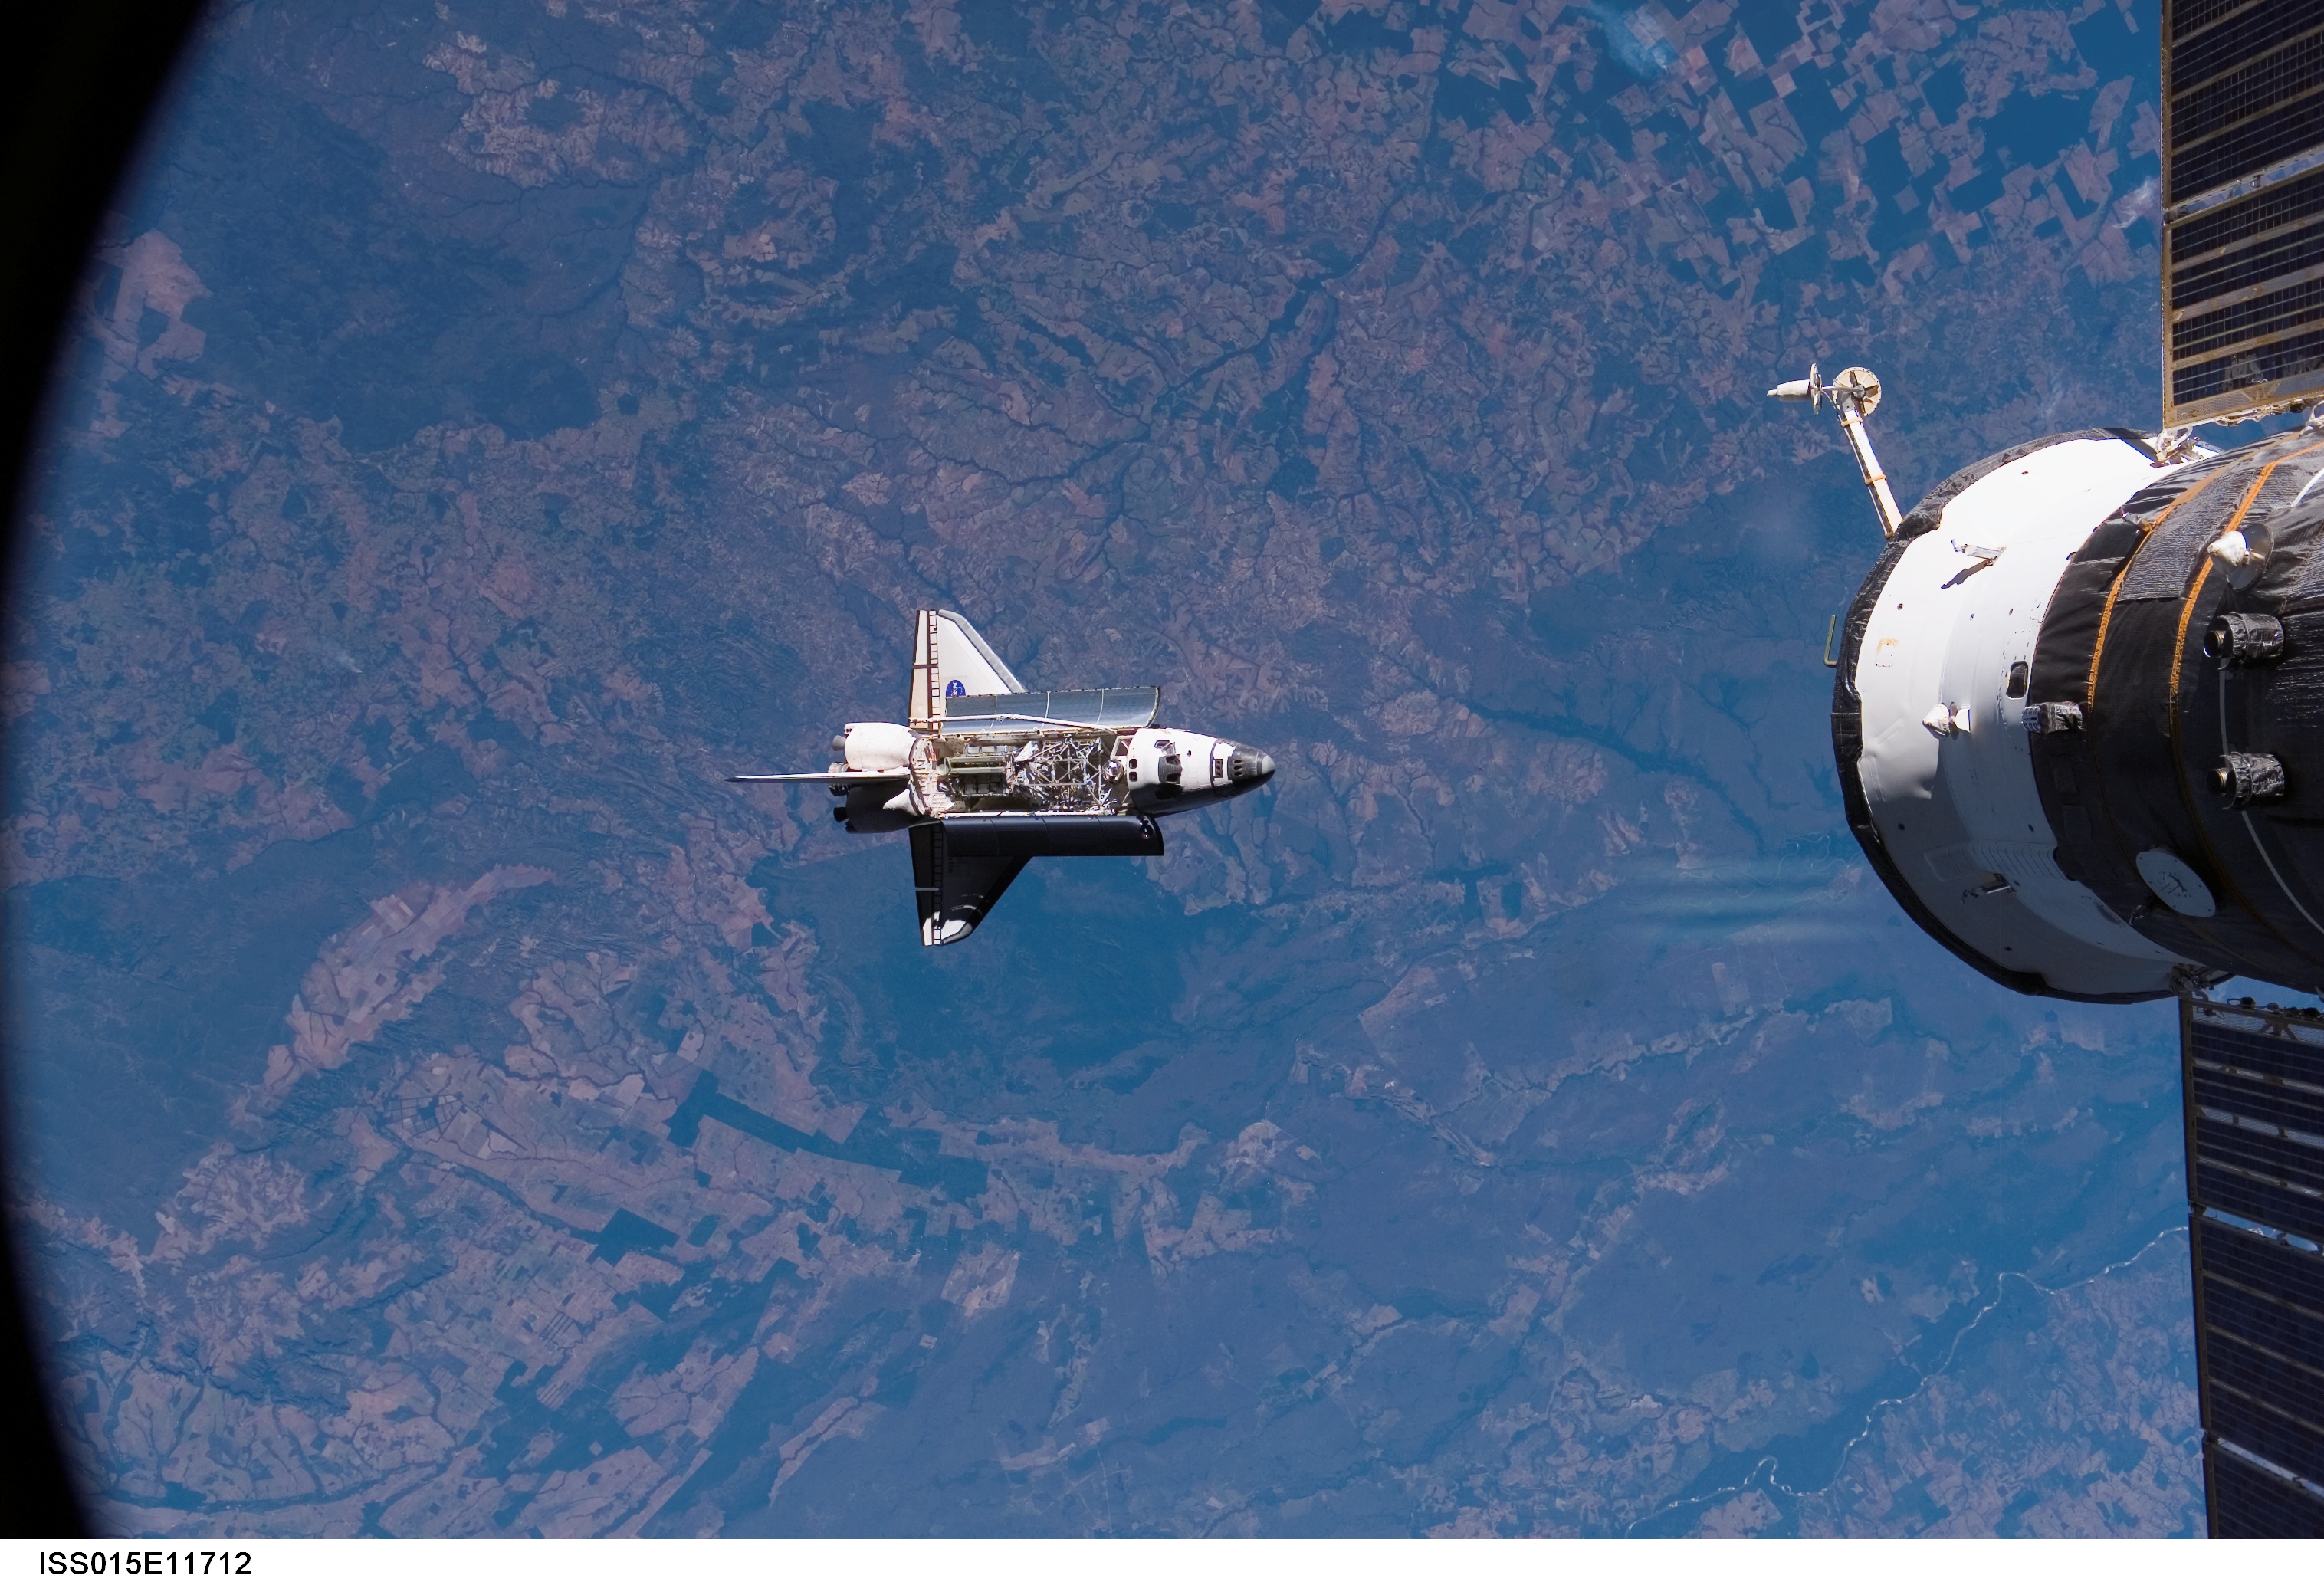 Фото космического корабля в космосе. Спейс шаттл. Спейс шаттл космический корабль. «Союз ТМА-М» (космический корабль). Космические аппарат Спейс шаттл.